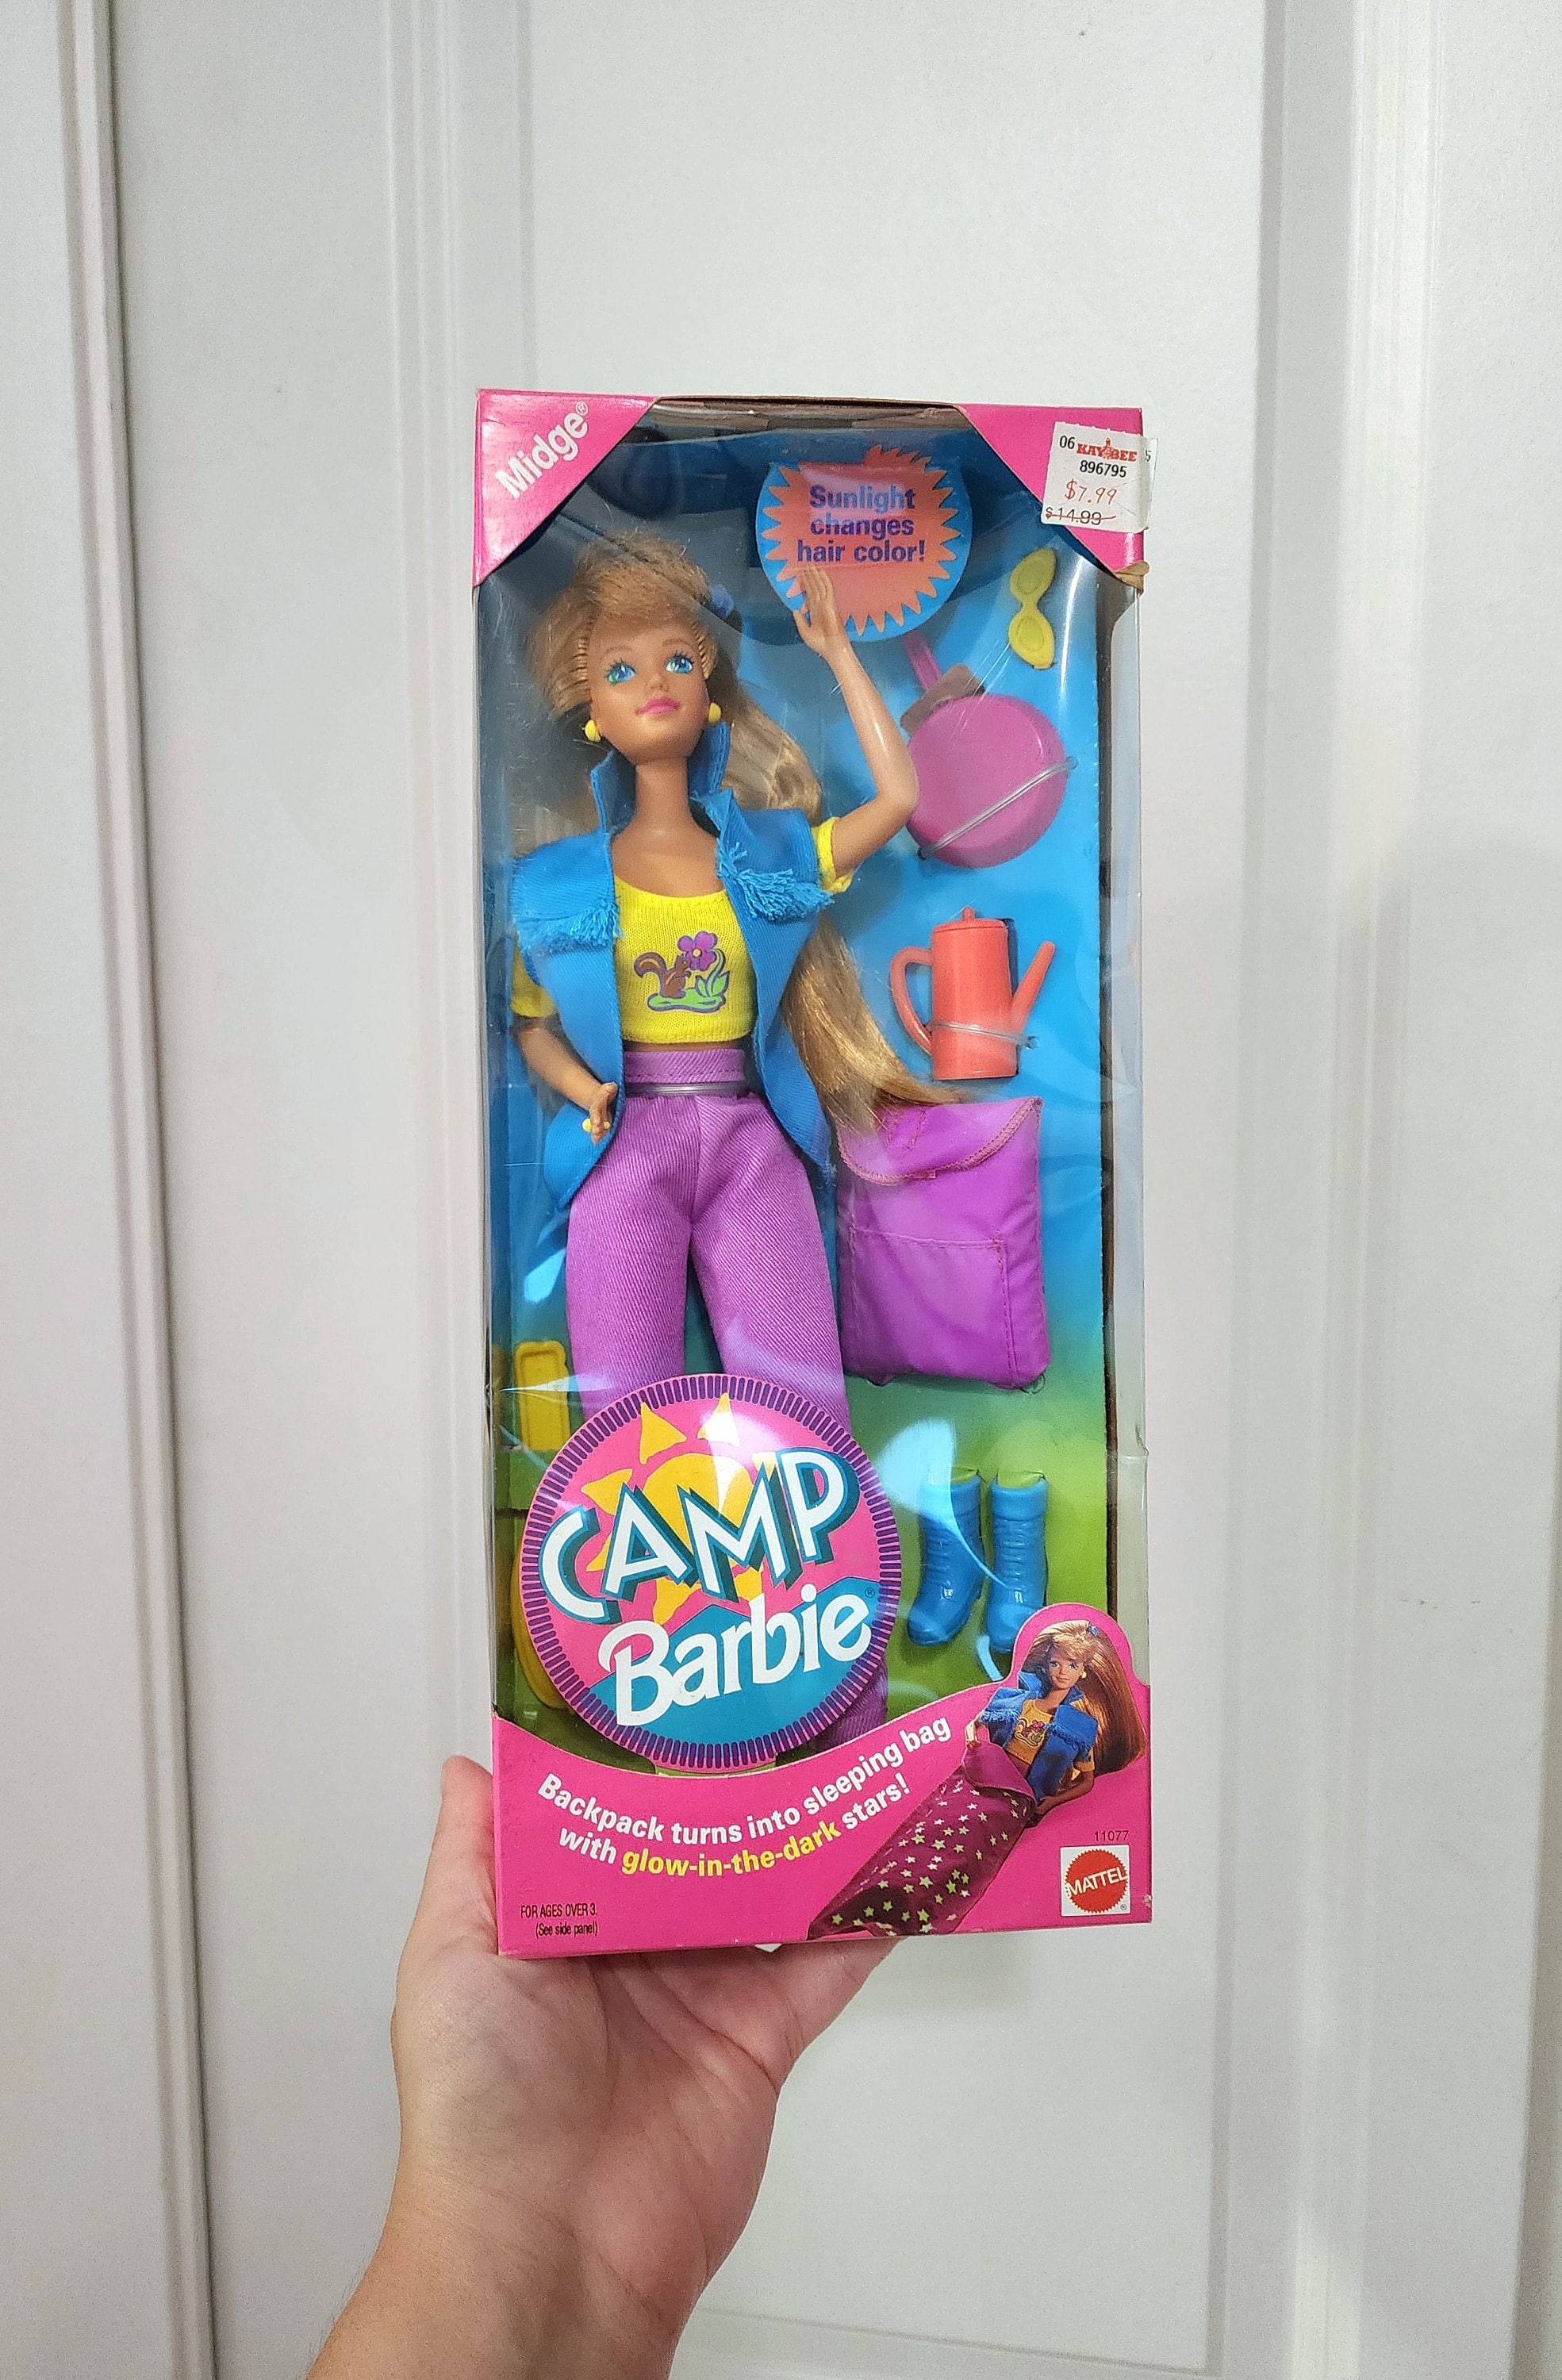 Barbie - La Famille du Bonheur Midge et Bébé - Mattel 2003 (ref